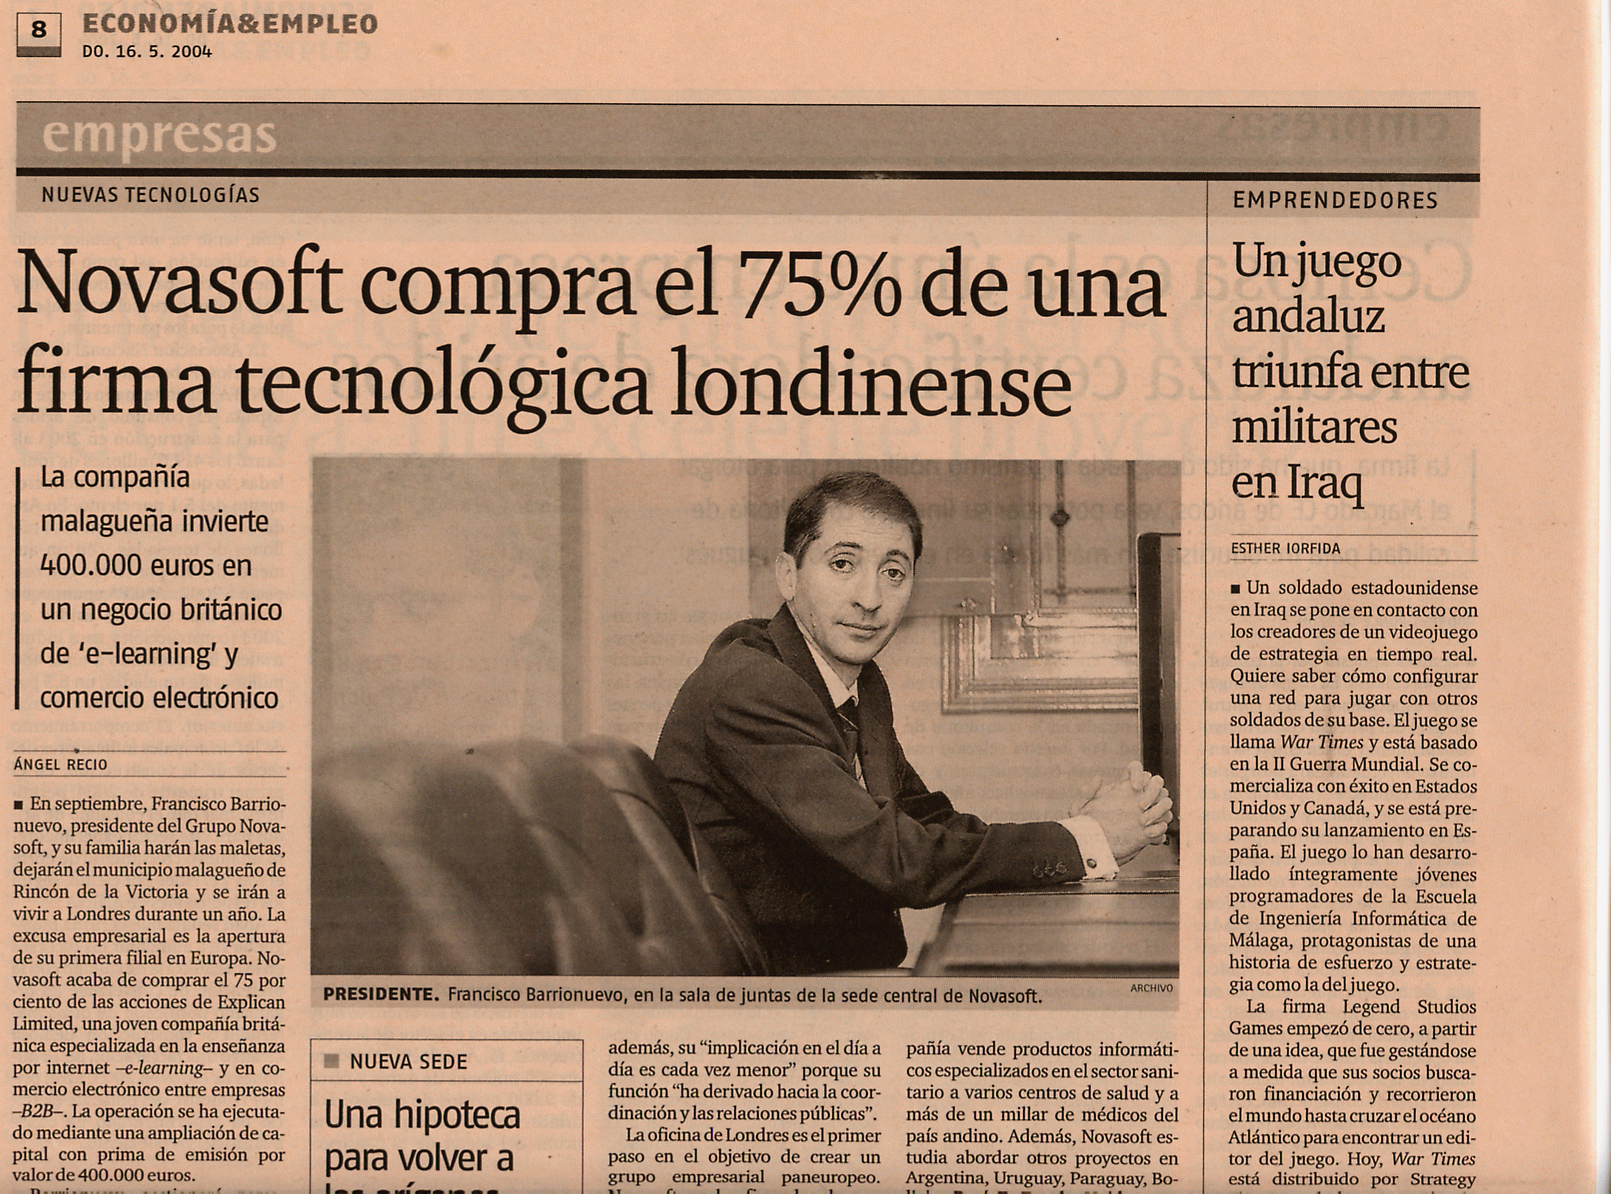 Diario de Sevilla / Suplemento Economa & Empleo (16-05-2004) (A) / Pulse Aqu para Visitar su Web